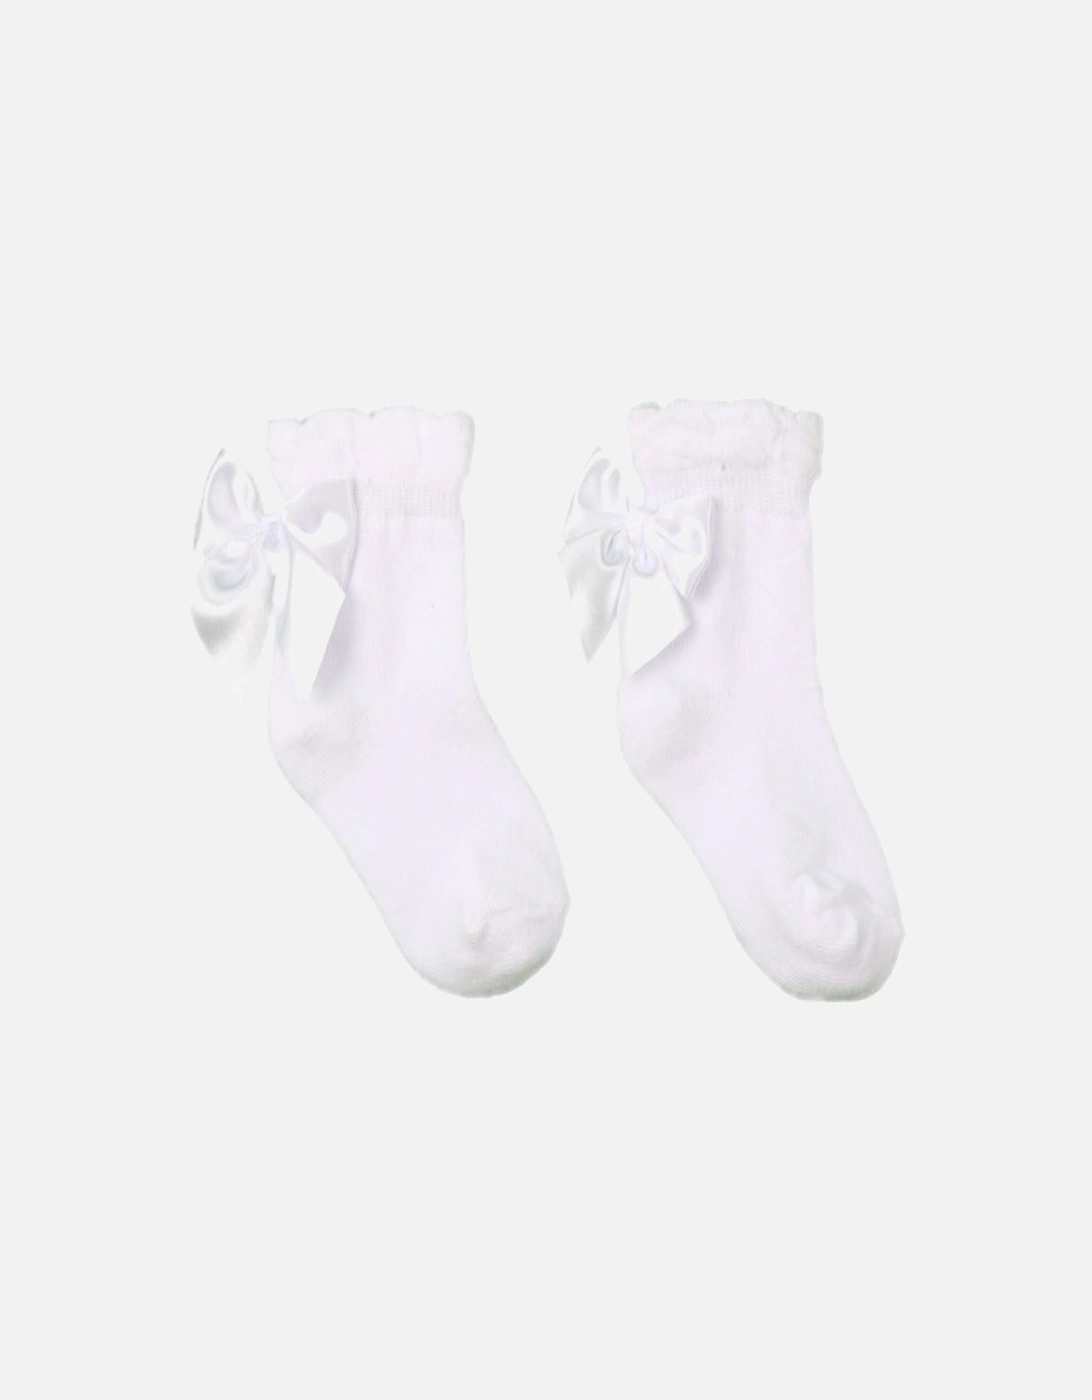 White Ankle Bow Socks, 2 of 1